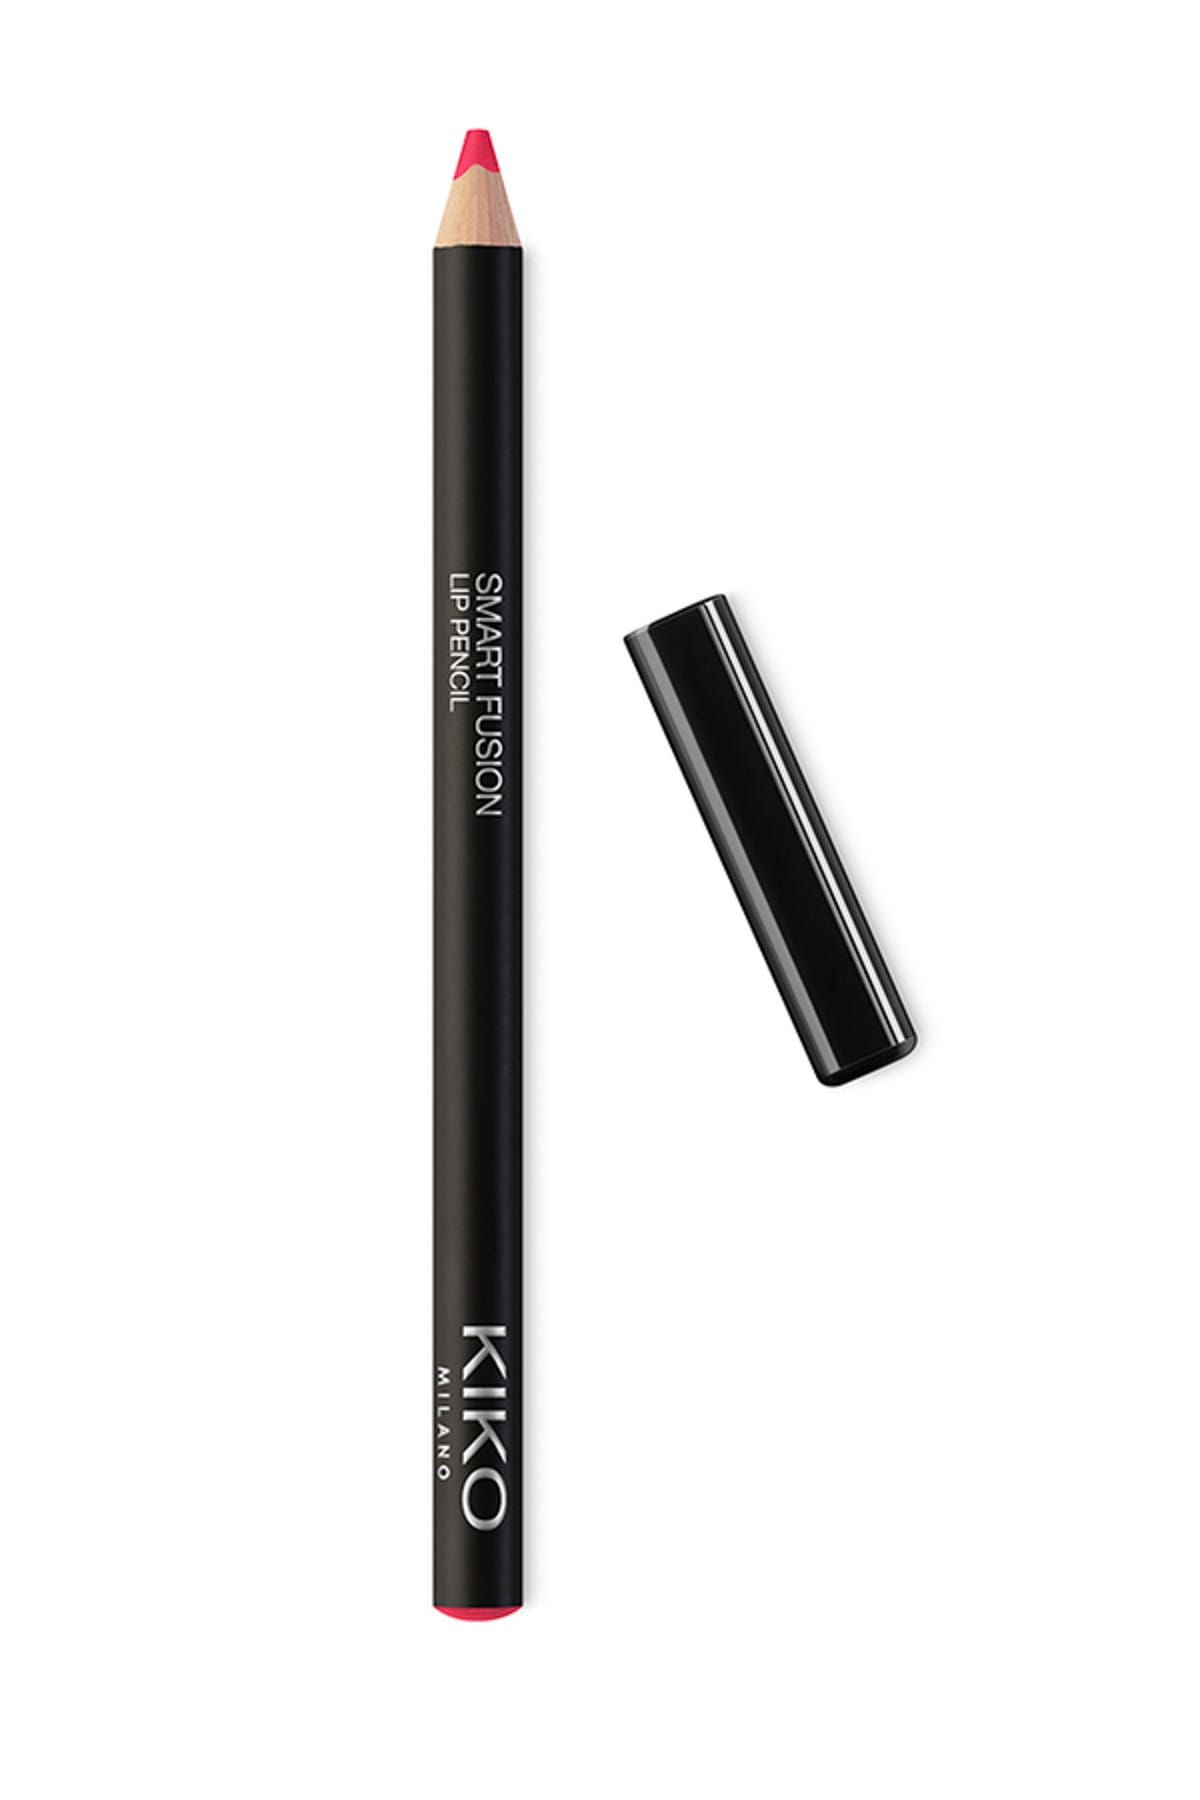 KIKO مداد لب Smart Fusion بافت نرم و روان شماره 522 رنگ قرمز زرشکی